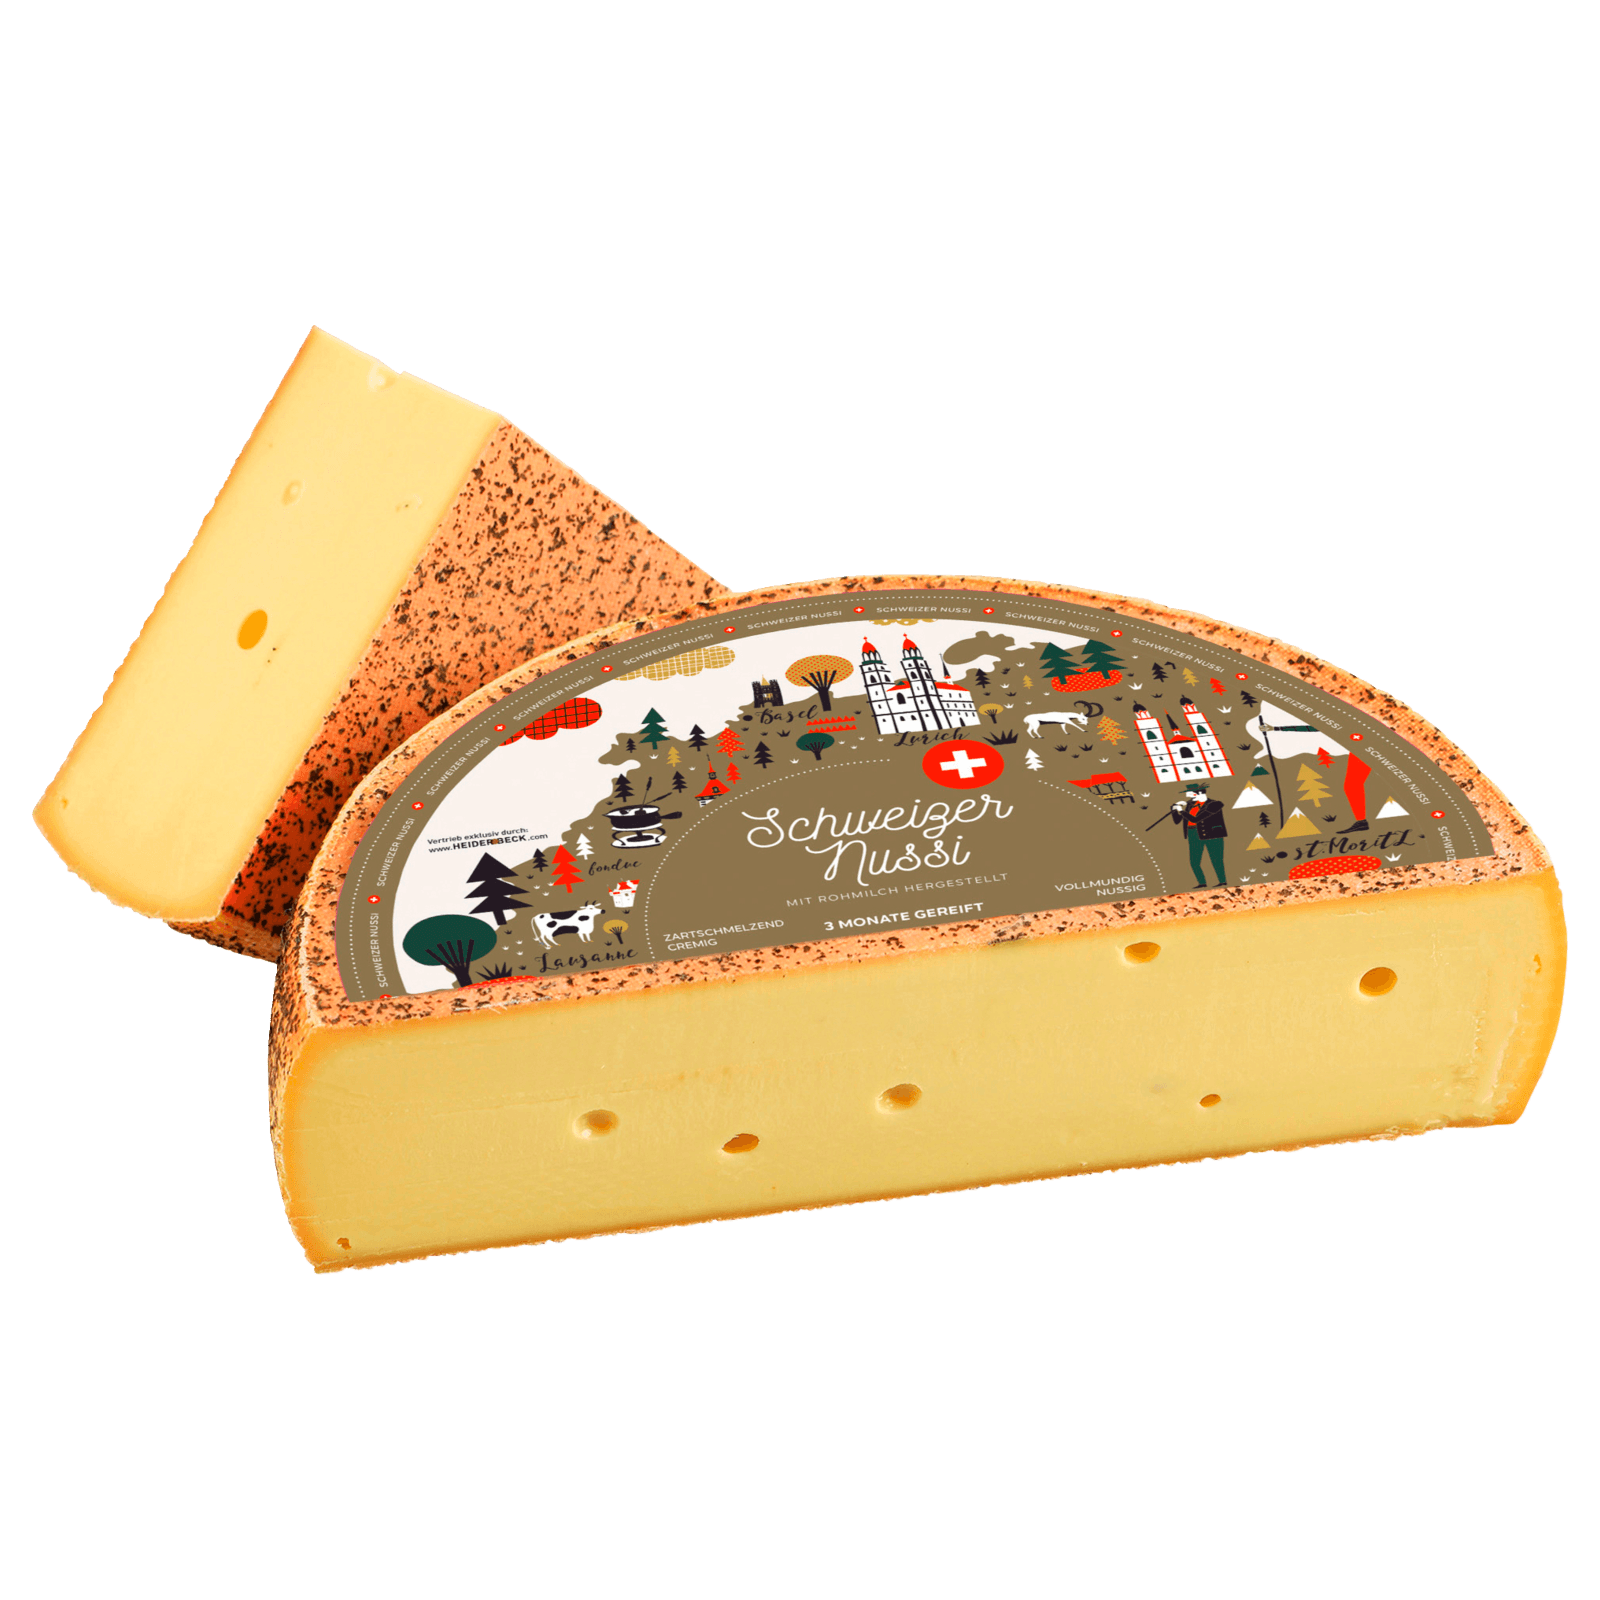 Schweizer Nussi Käse  für 4.59 EUR